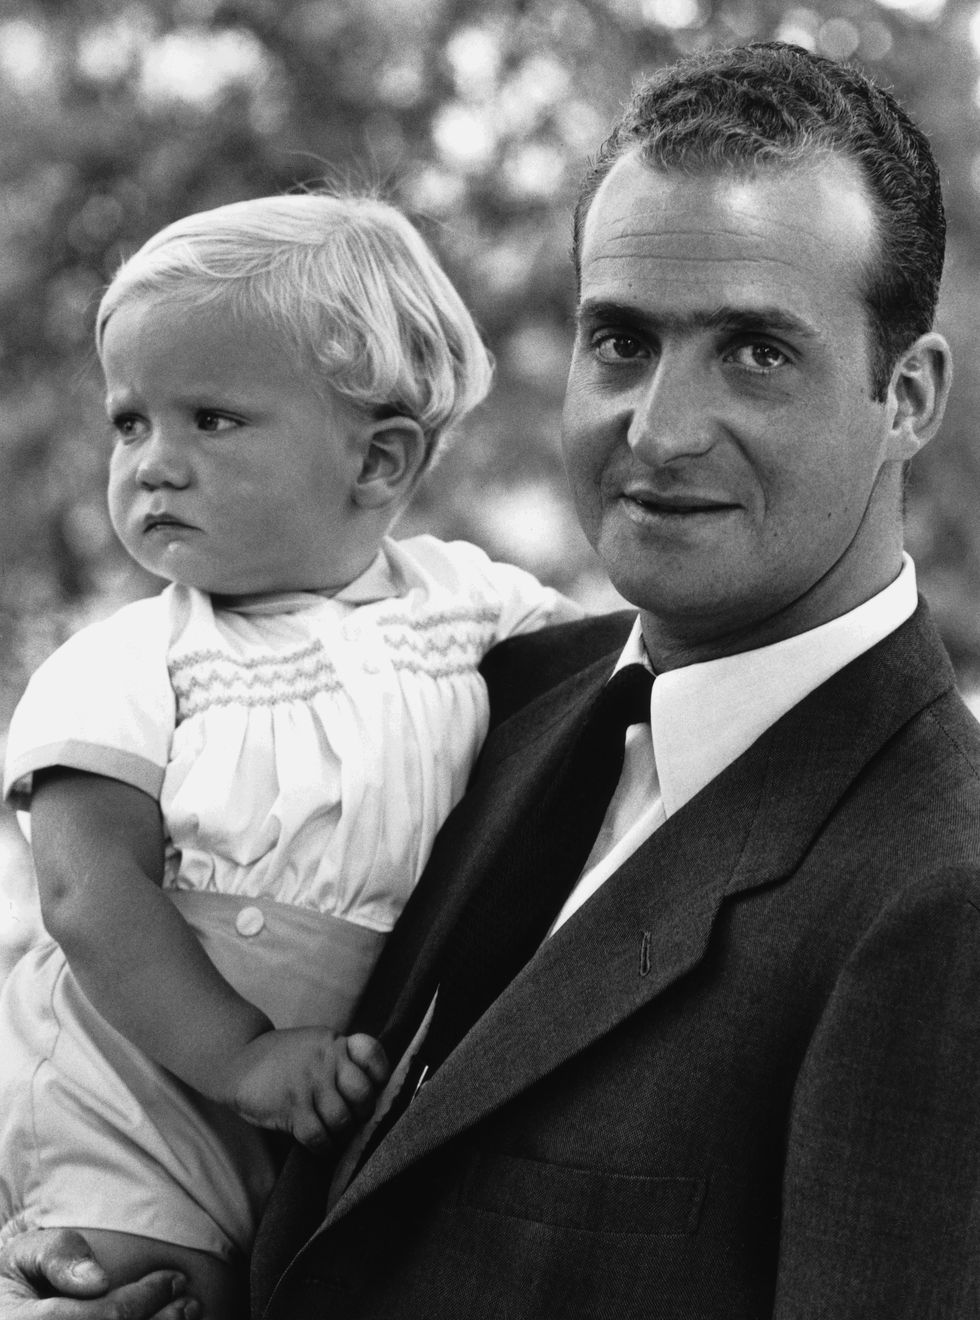 el rey juan carlos con su hijo el principe felipe en una foto en blanco y negro 1969